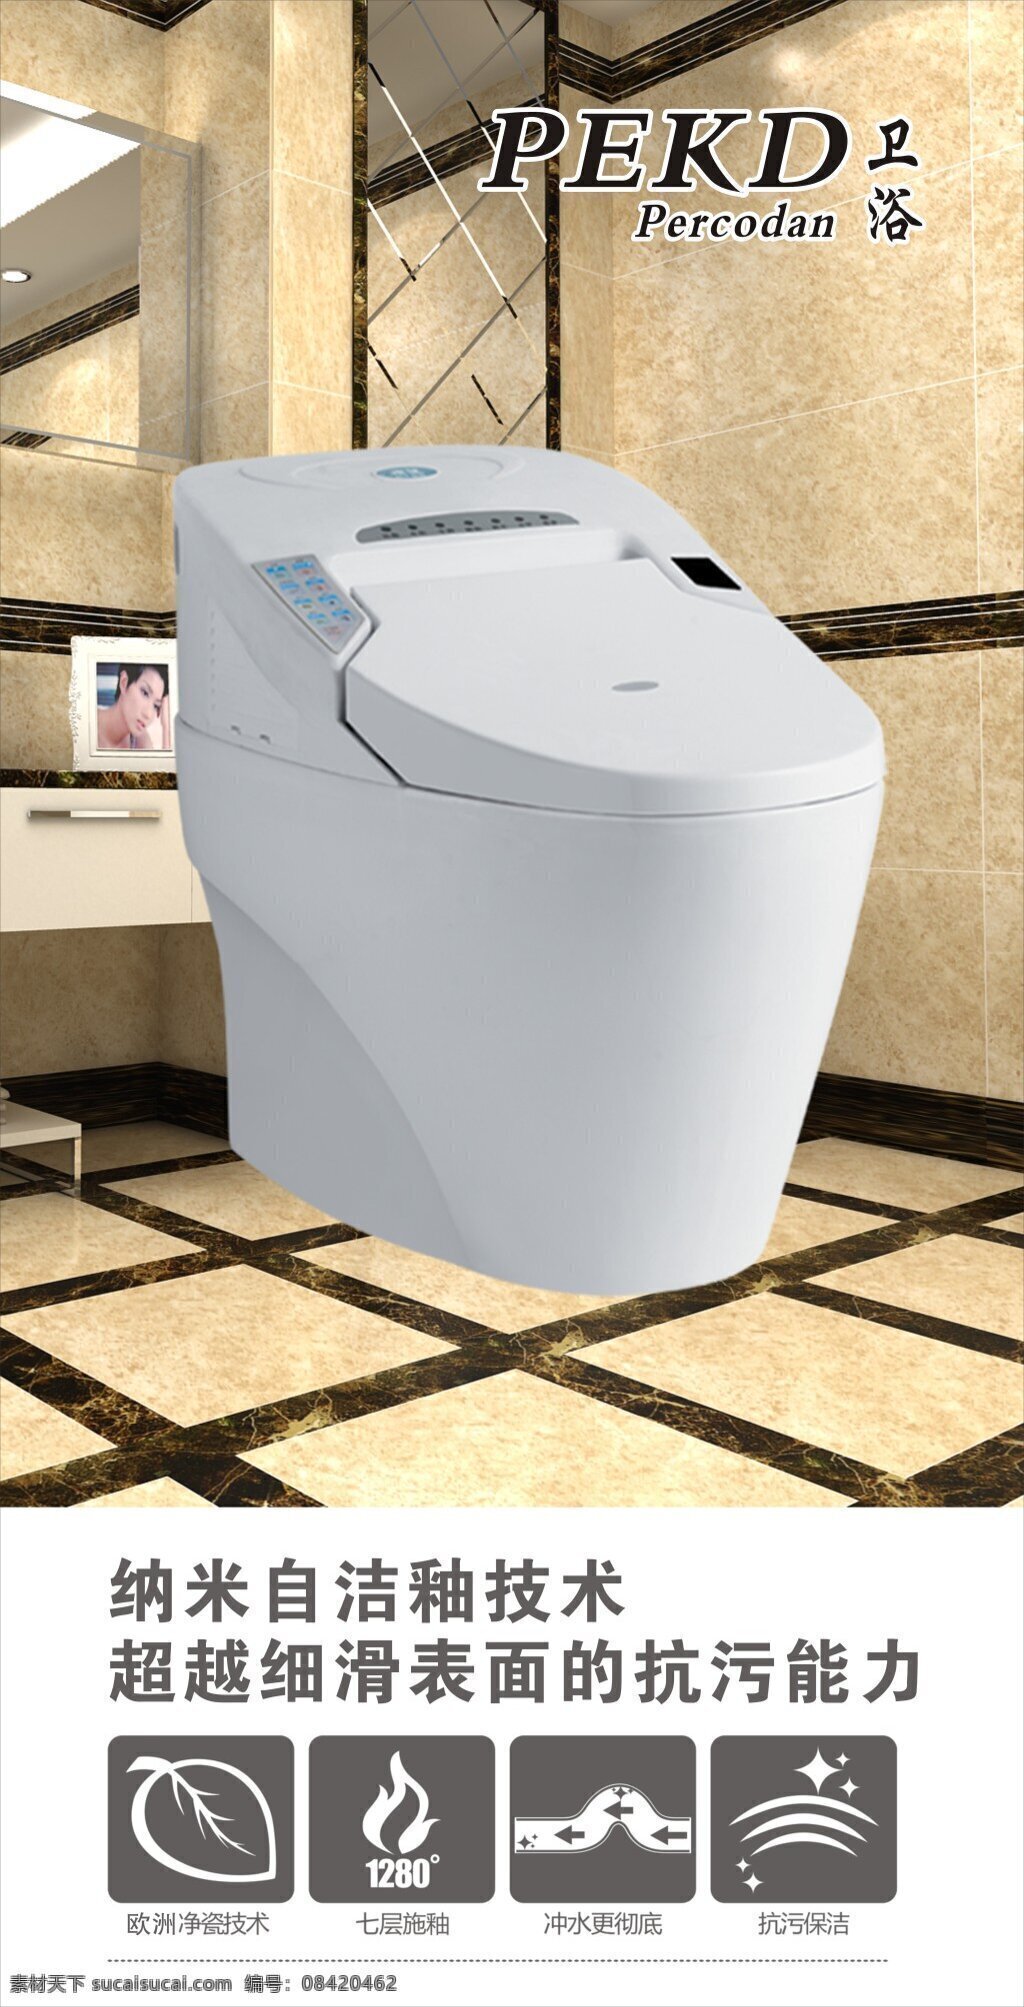 皮尔卡丹写真 卫浴类写真 写真设计 有图 皮尔卡丹 卫浴 写真 白色